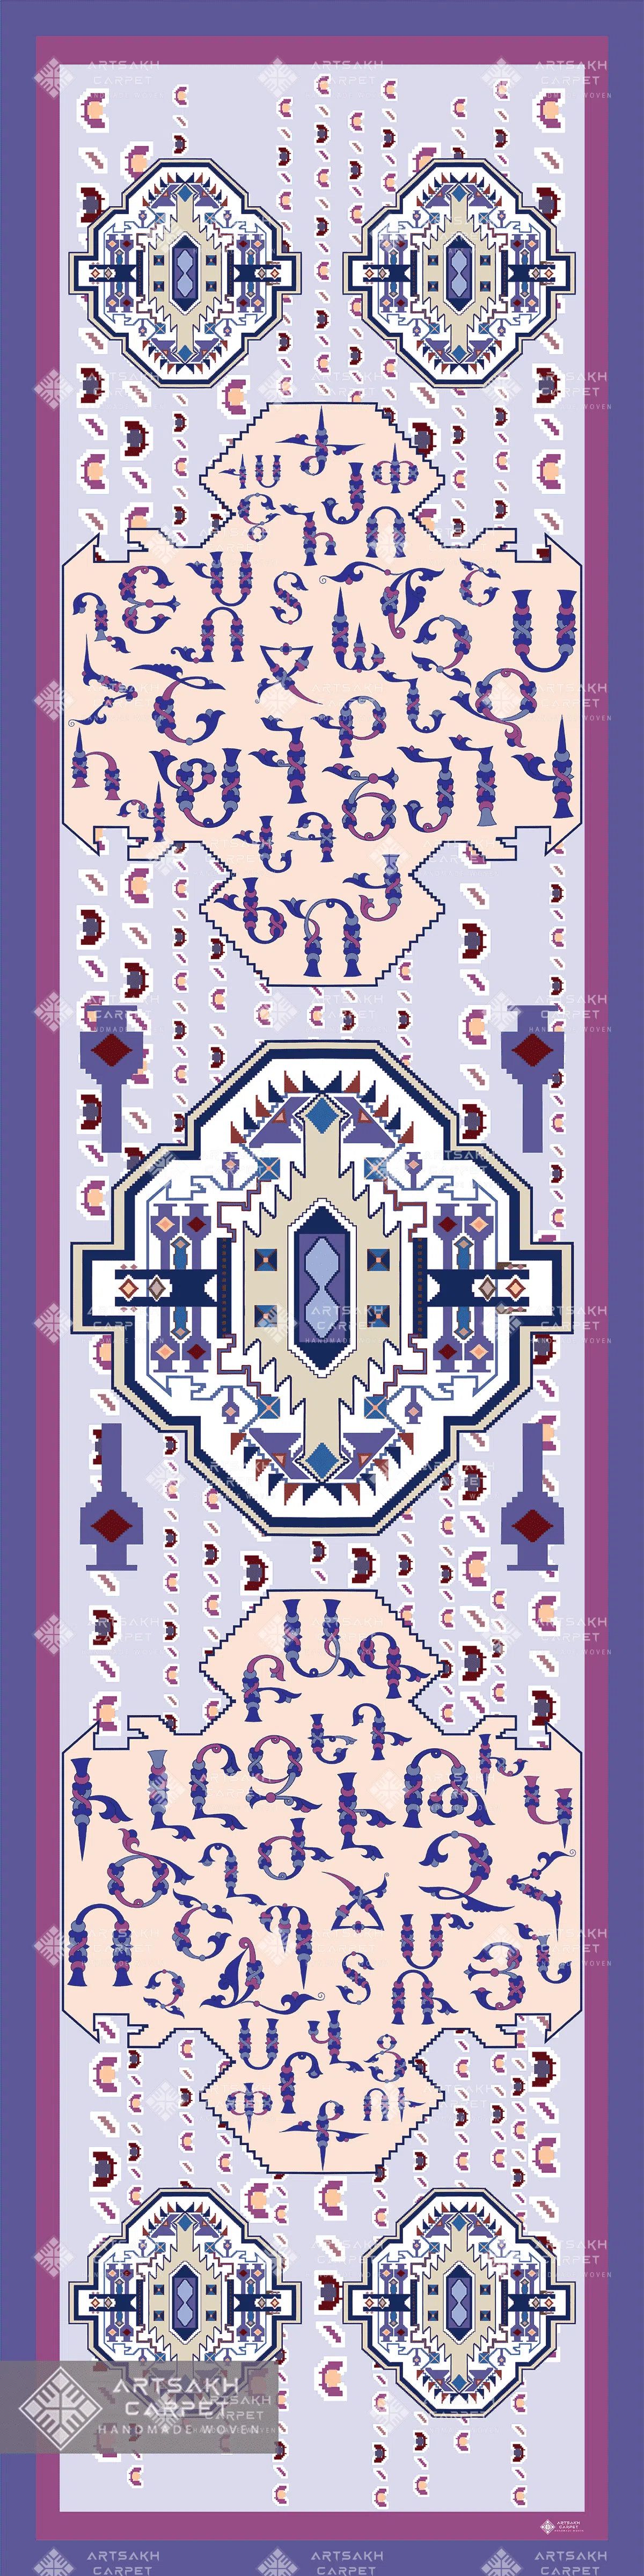 Silk scarf with Armenian ornaments